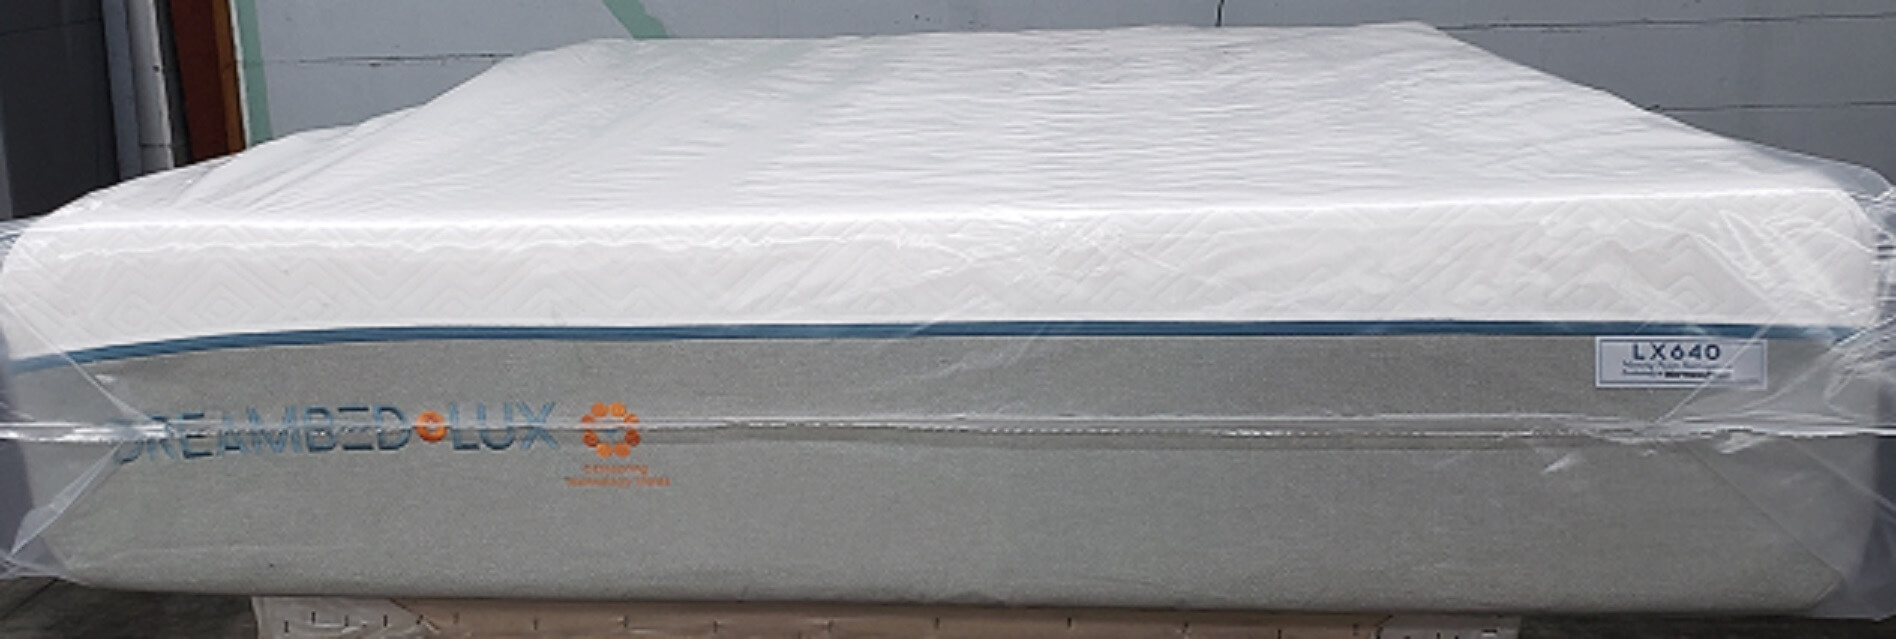 mattress firm dream bed lux 640